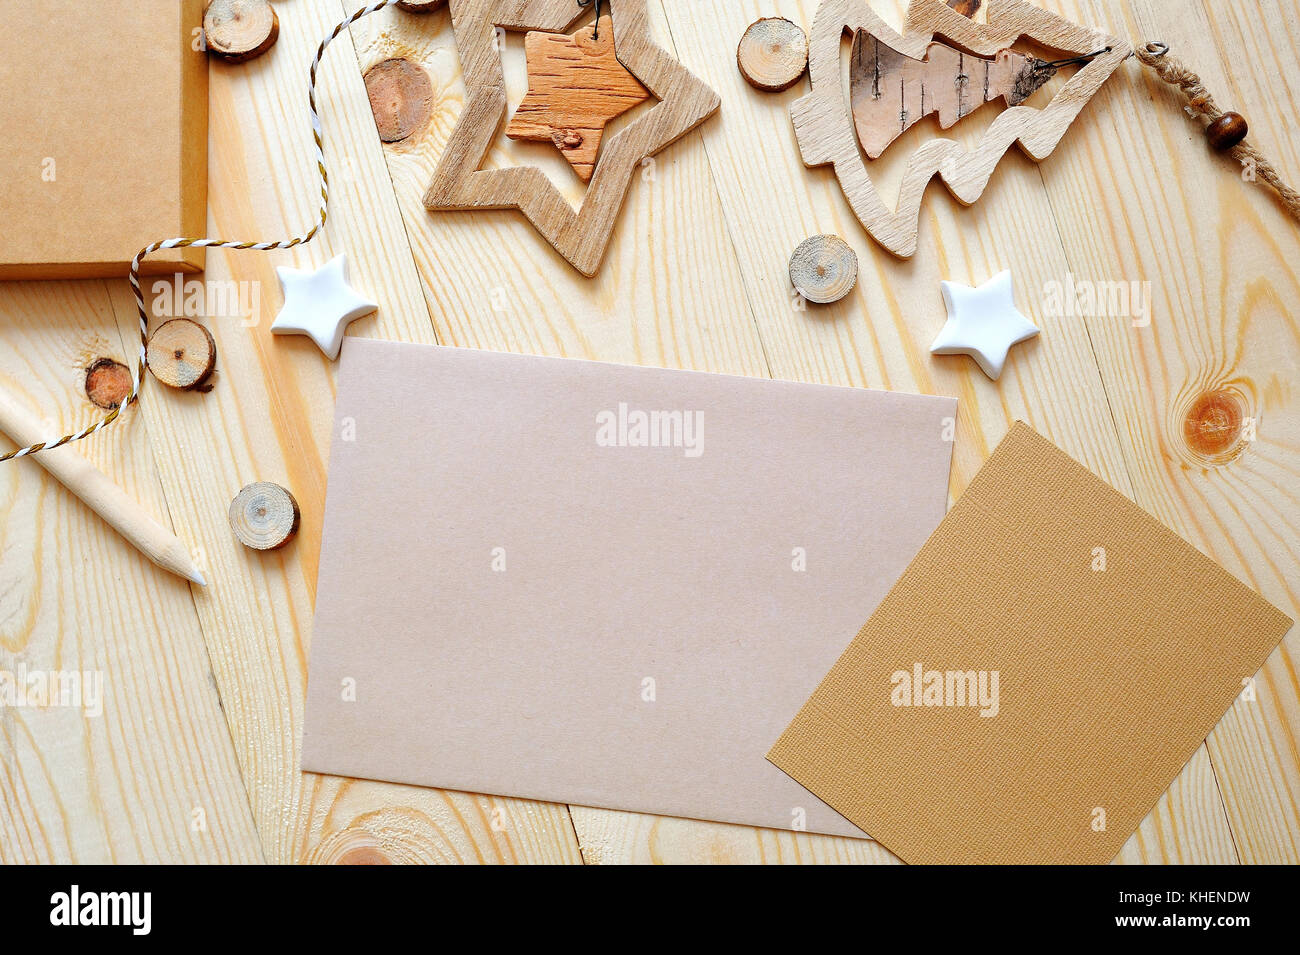 Weihnachten Hintergrund Kraftpapier Blatt Papier mit Platz für Ihren Text und weiße Weihnachten Stern und Baum auf Holz- Hintergrund. Flach, Ansicht von oben Foto mockup Stockfoto